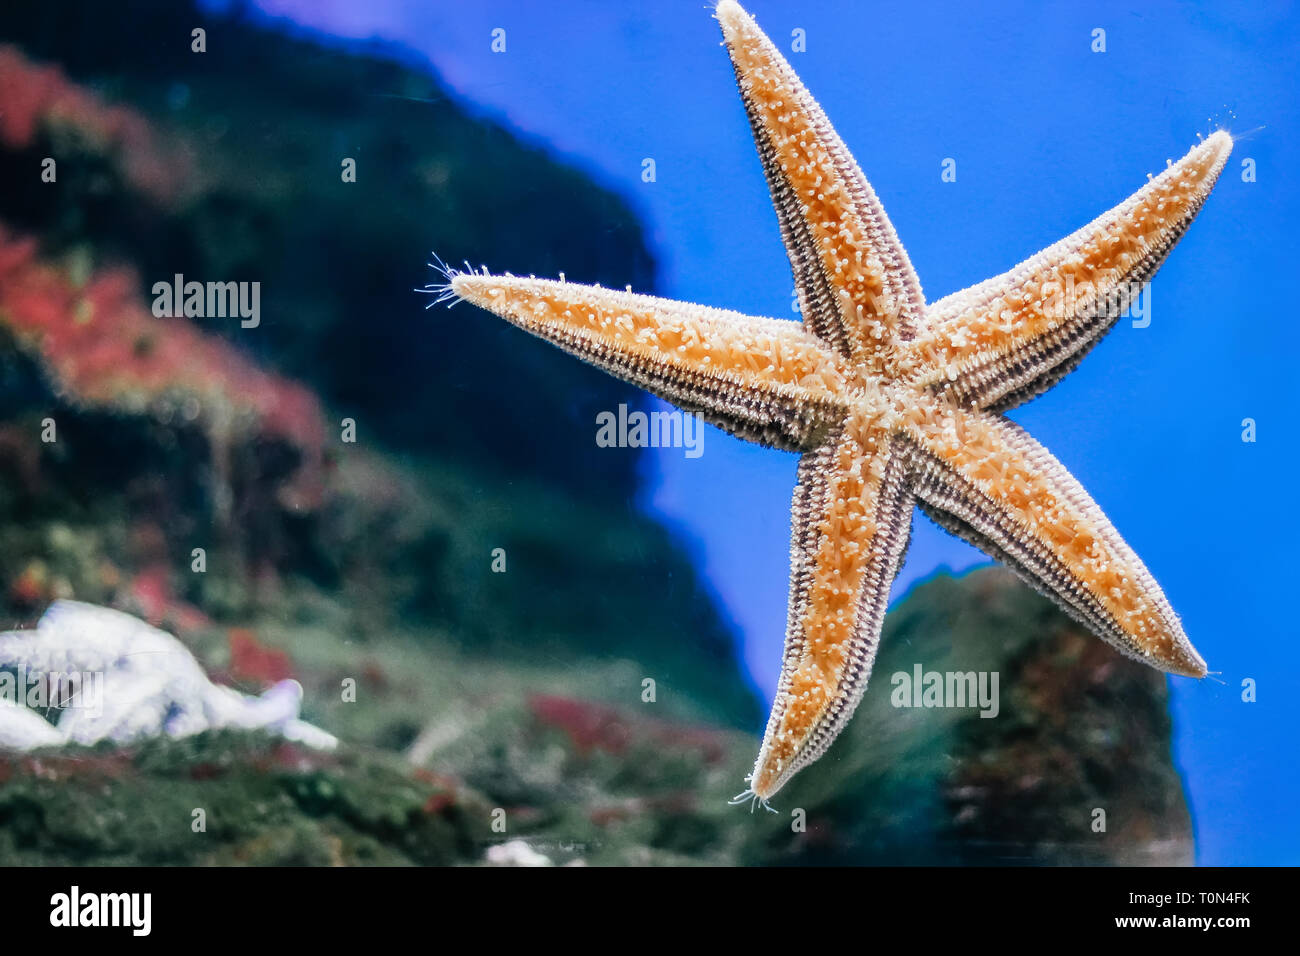 Beautiful orange starfish close-up in the aquarium Stock Photo